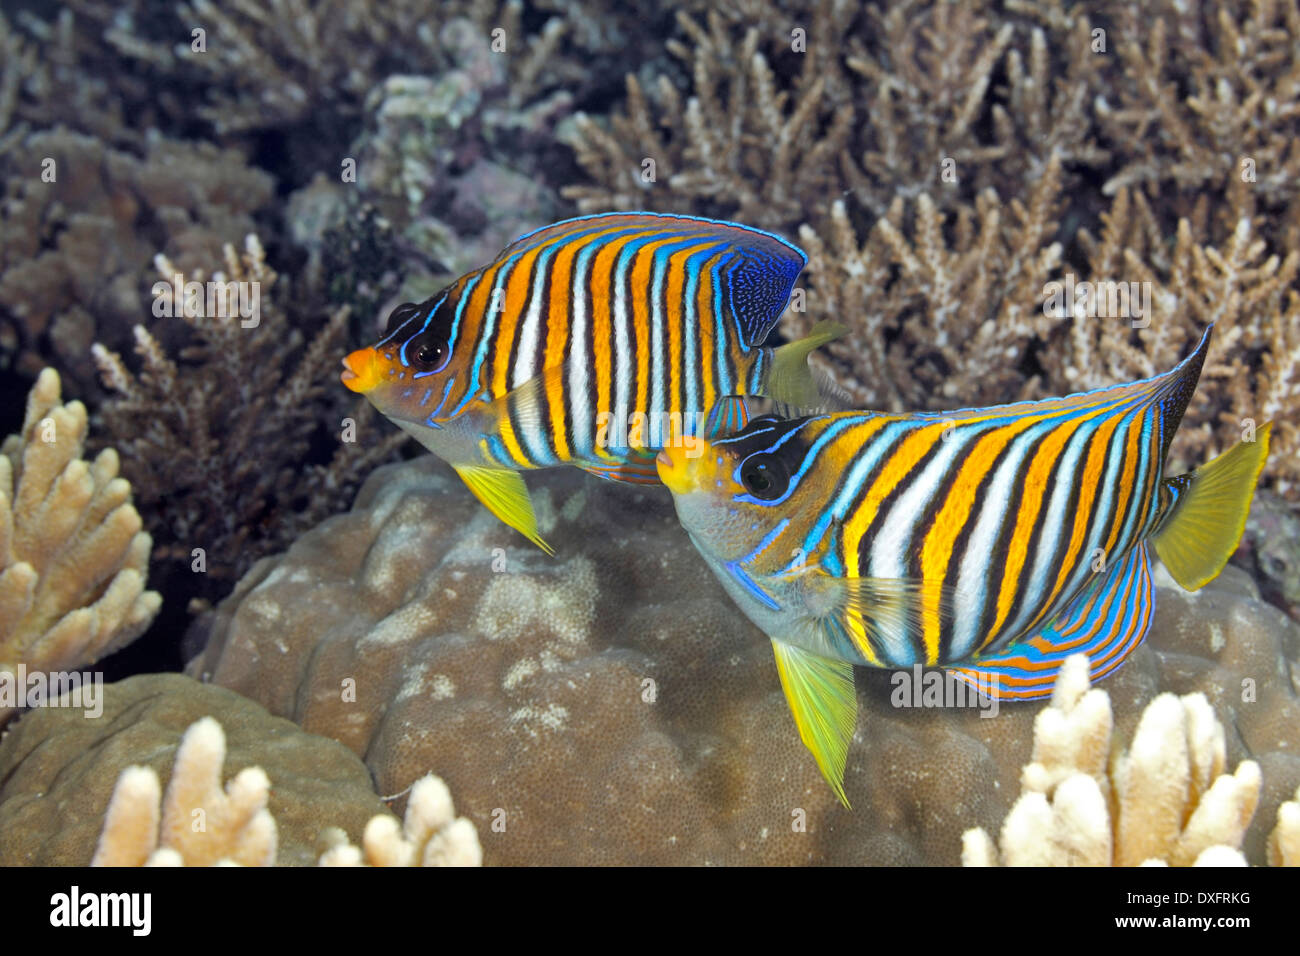 Regal deux Anges, Pygoplites diacanthus, natation sur barrière de corail. Aussi connu sous le nom de Royal Angelfish. Banque D'Images